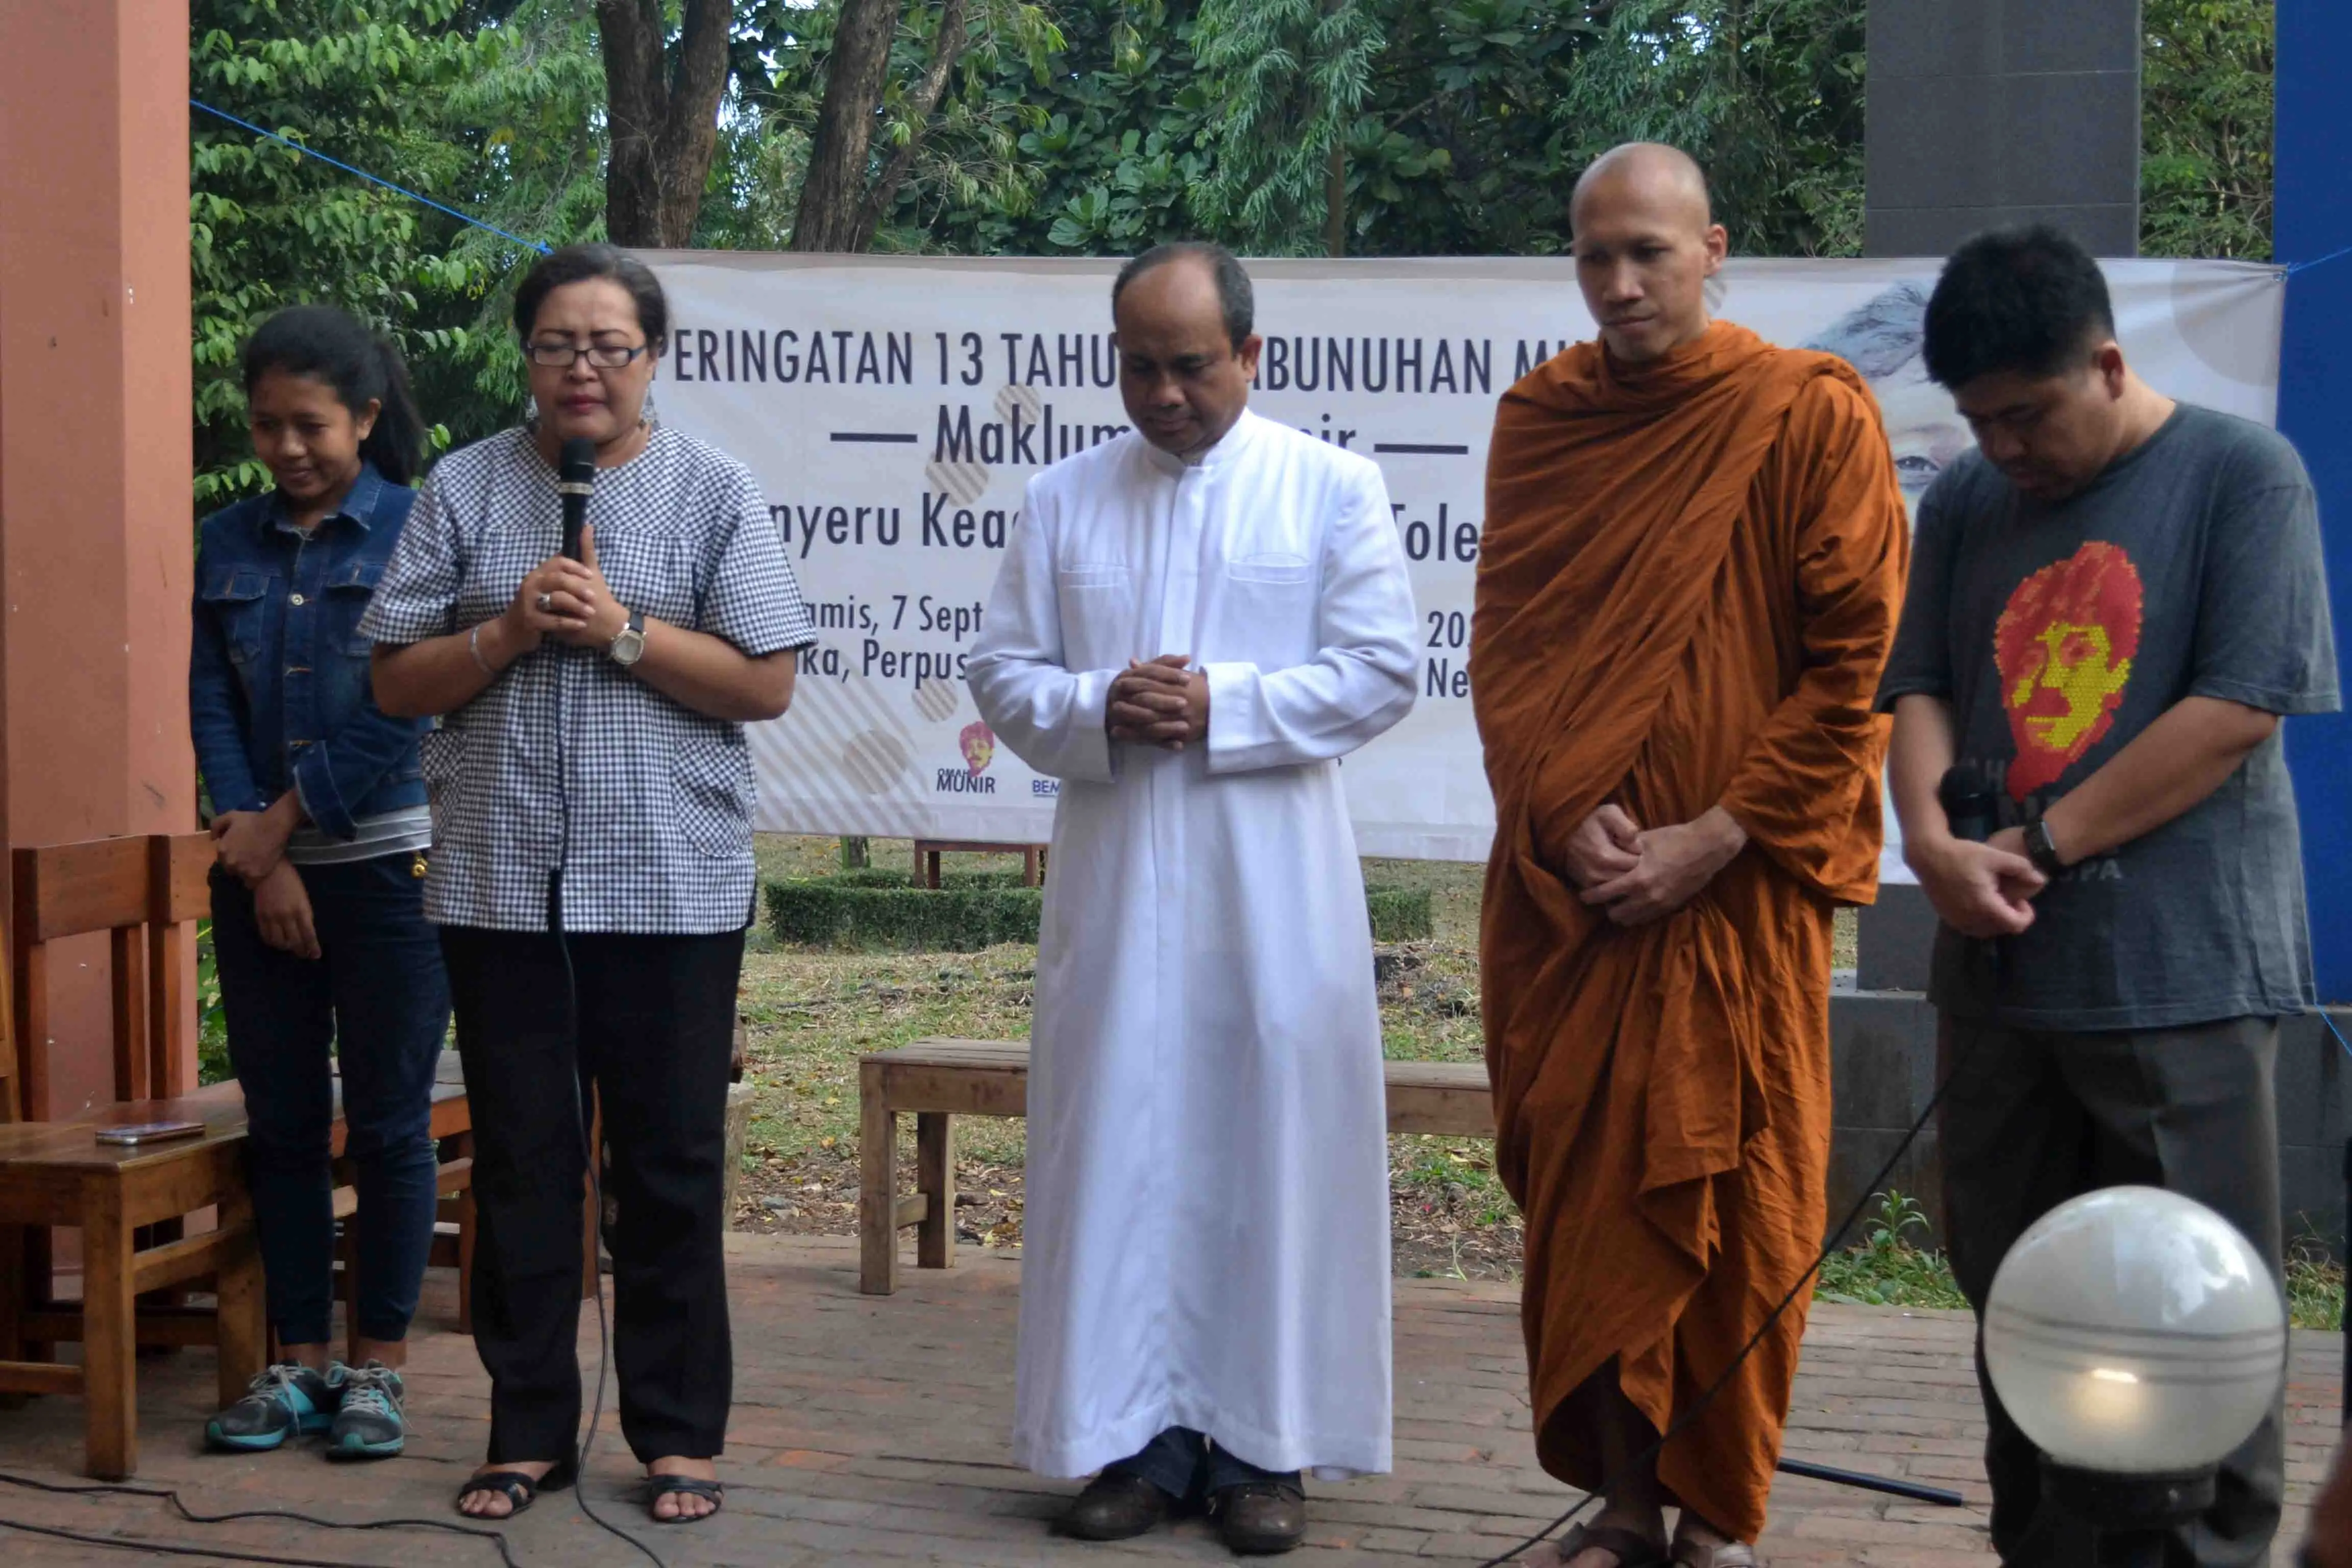 Komunitas lintas agama berdoa bersama di peringatan 13 tahun terbunuhnya aktivis HAM, Munir Said Thalib di Malang, Jawa Timur. (Zainul Arifin/Liputan6.com)